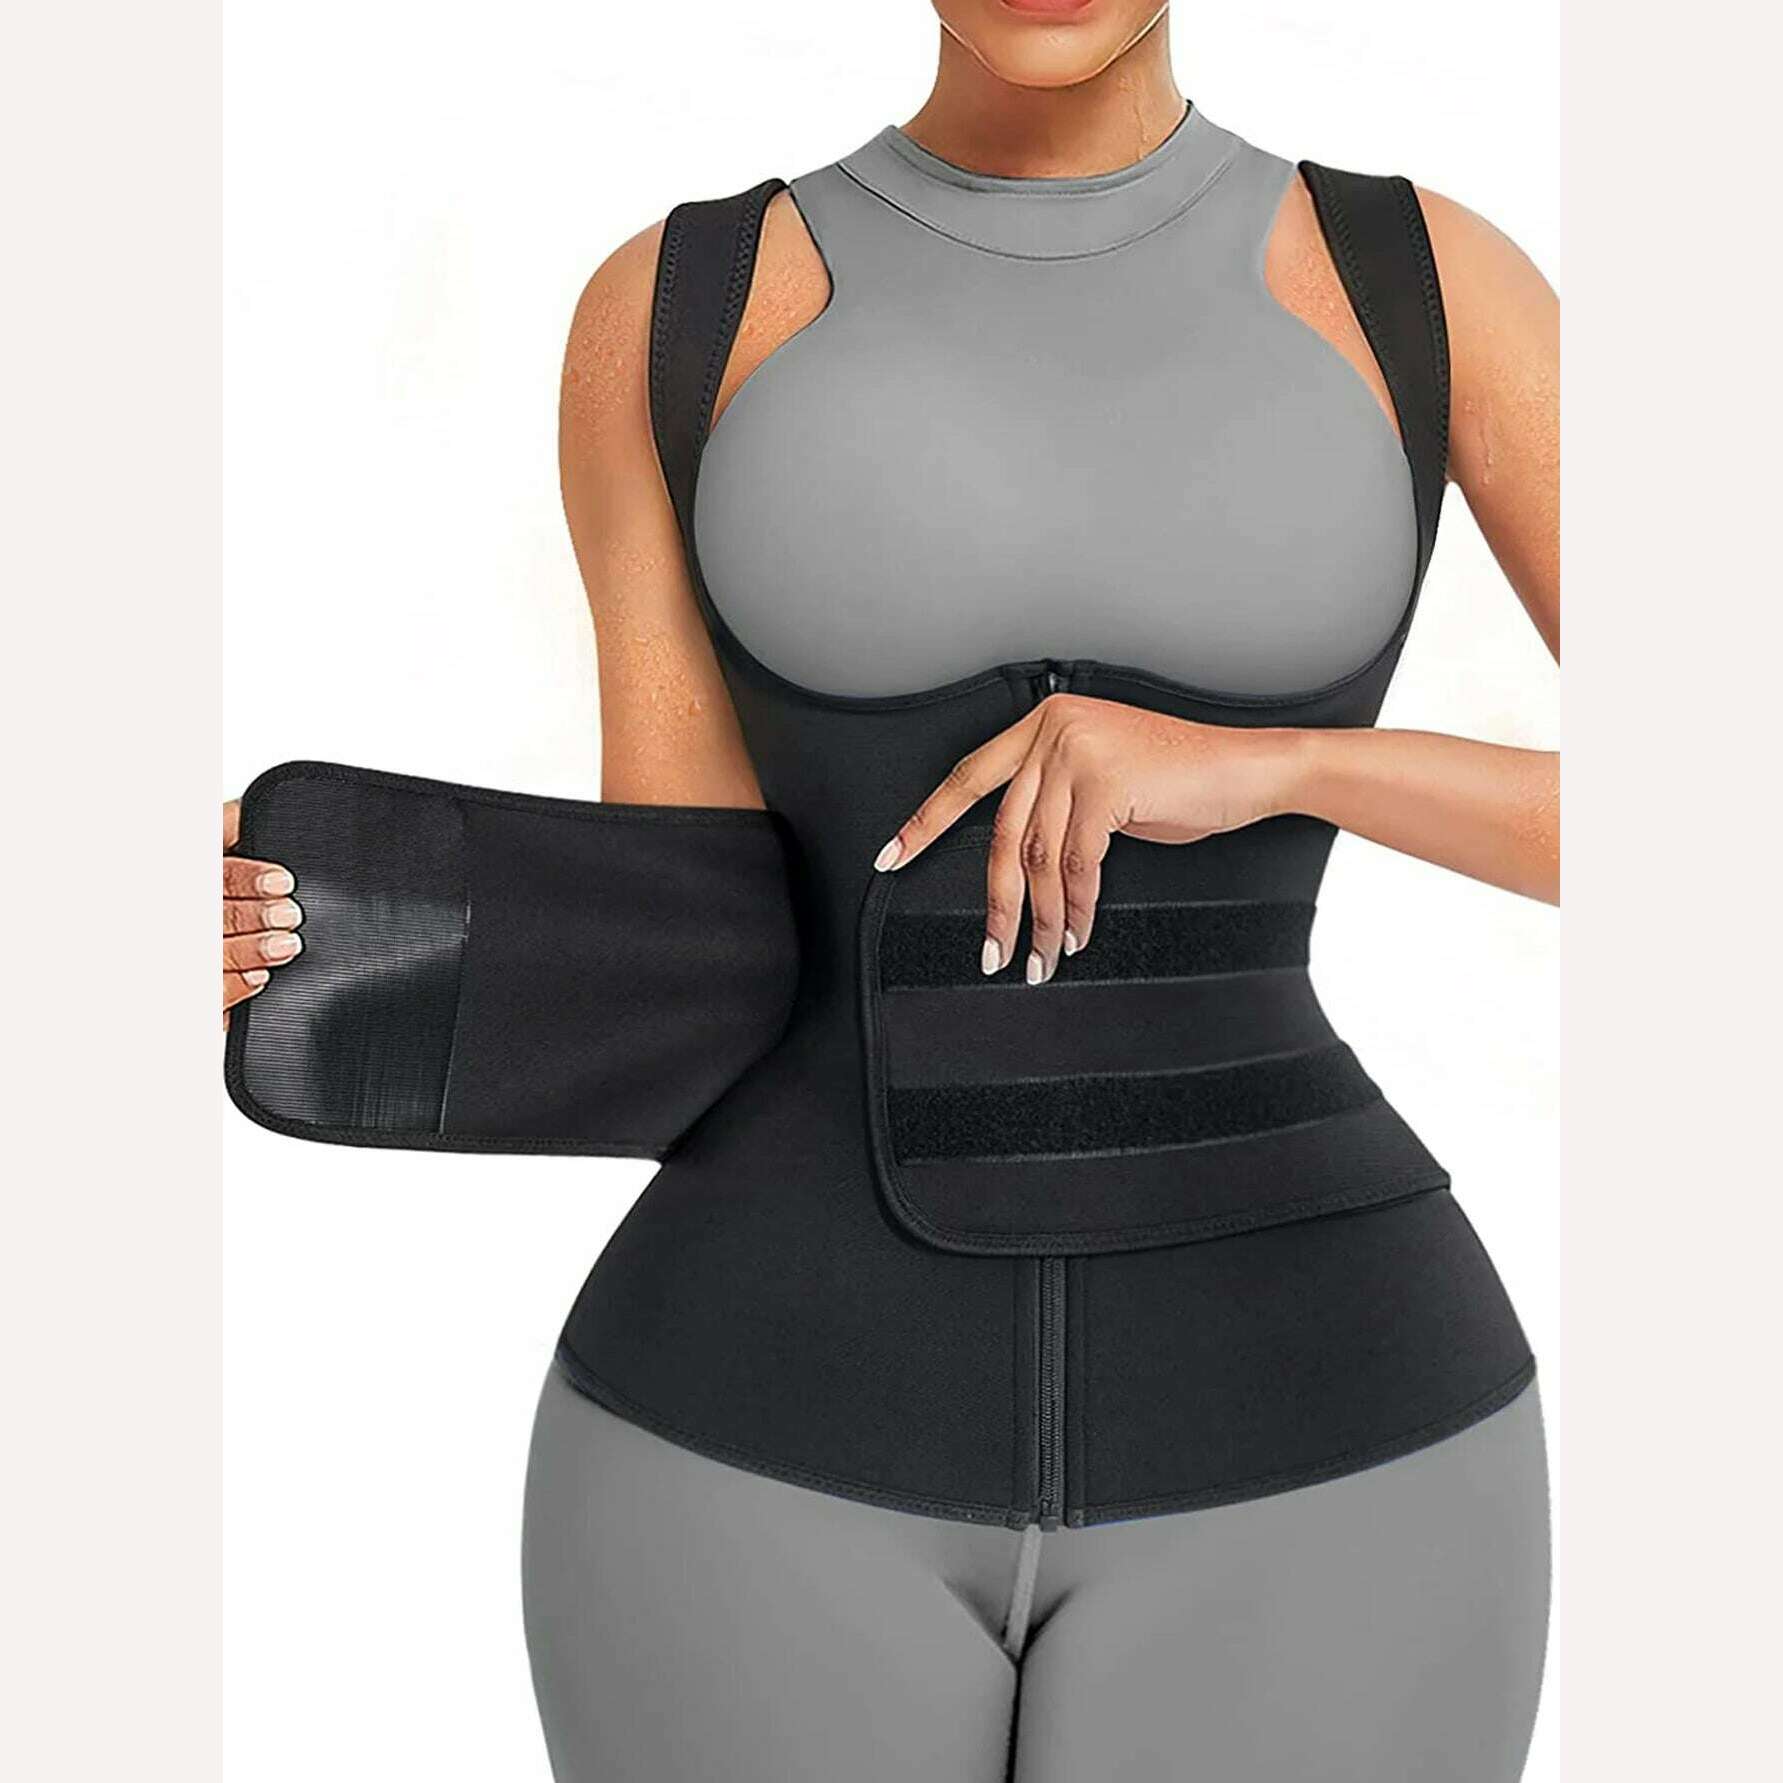 KIMLUD, Neoprene Sauna Suit for Women Sauna Sweat Vest Waist Trainer adjustable Belts, KIMLUD Women's Clothes